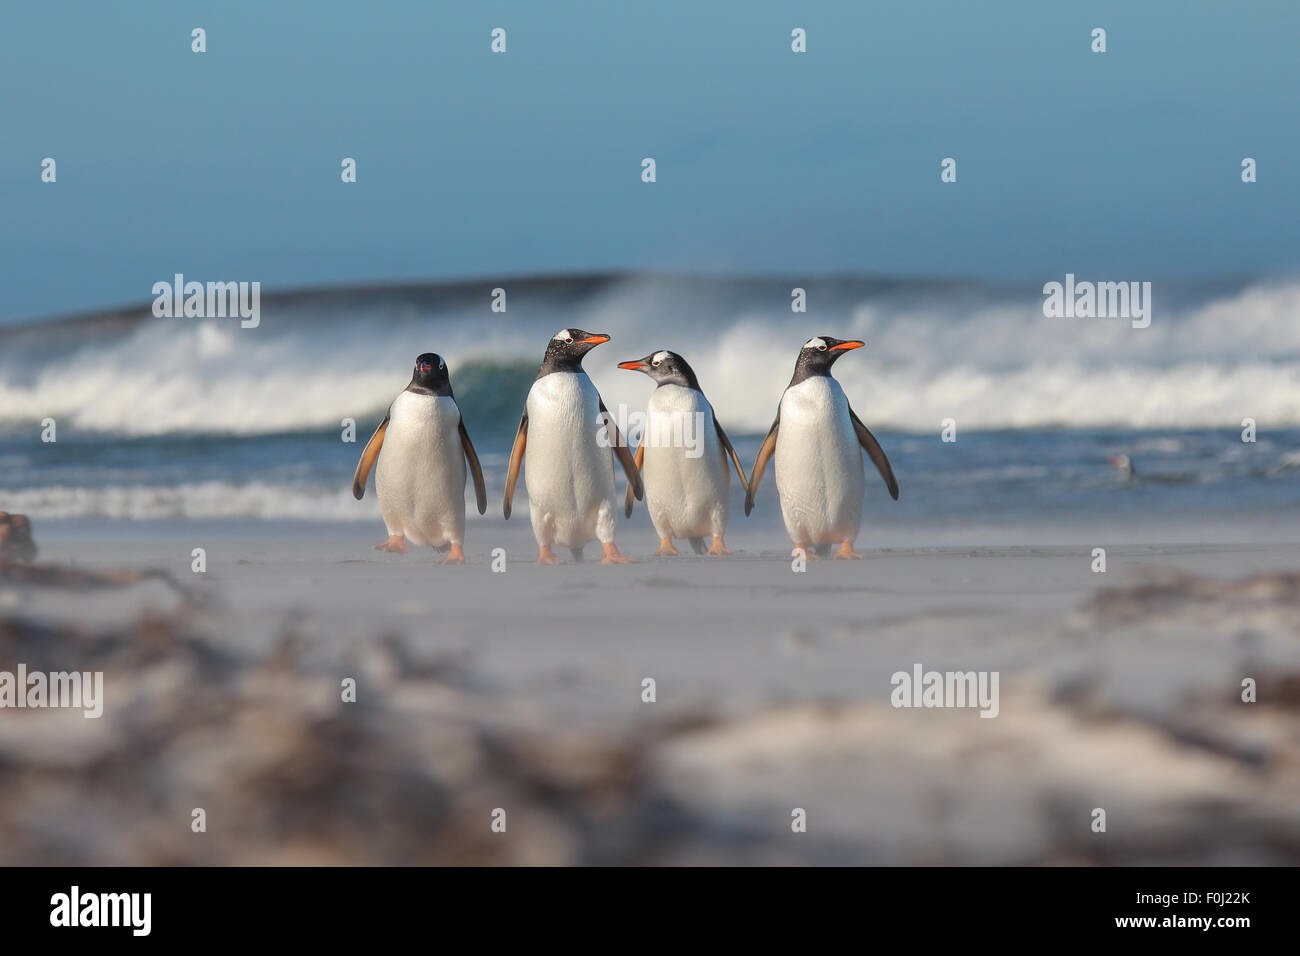 Cuatro pingüinos Gentoo caminando desde el mar. Bertha's Beach, Islas Malvinas. Foto de stock